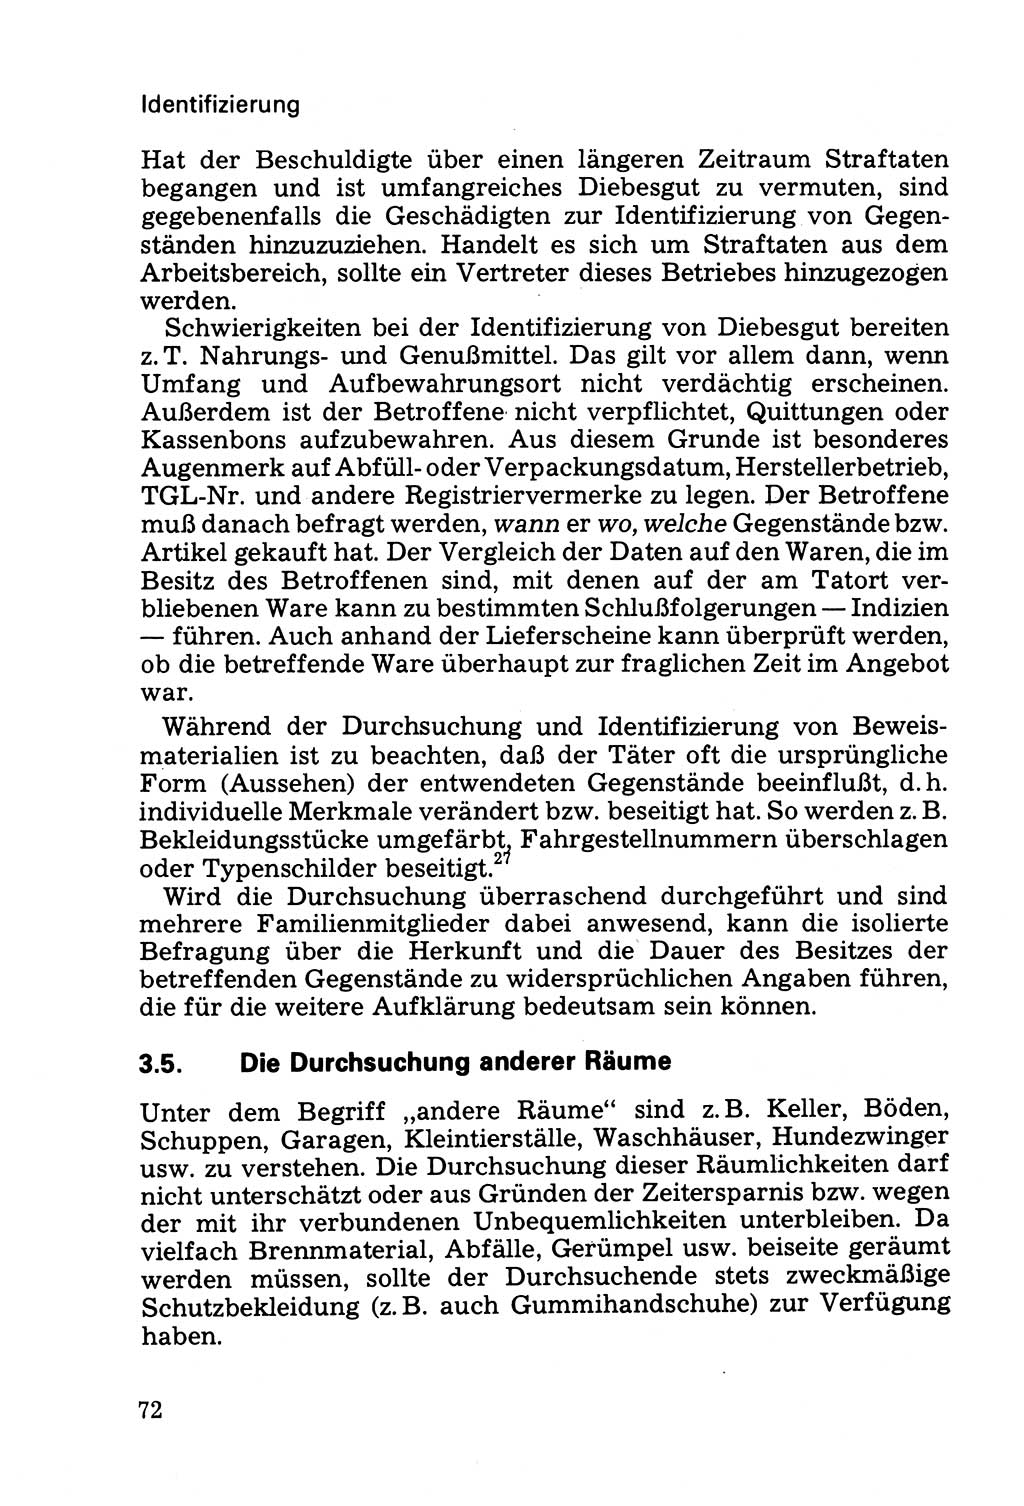 Die Durchsuchung und die Beschlagnahme [Deutsche Demokratische Republik (DDR)] 1979, Seite 72 (Durchs. Beschl. DDR 1979, S. 72)